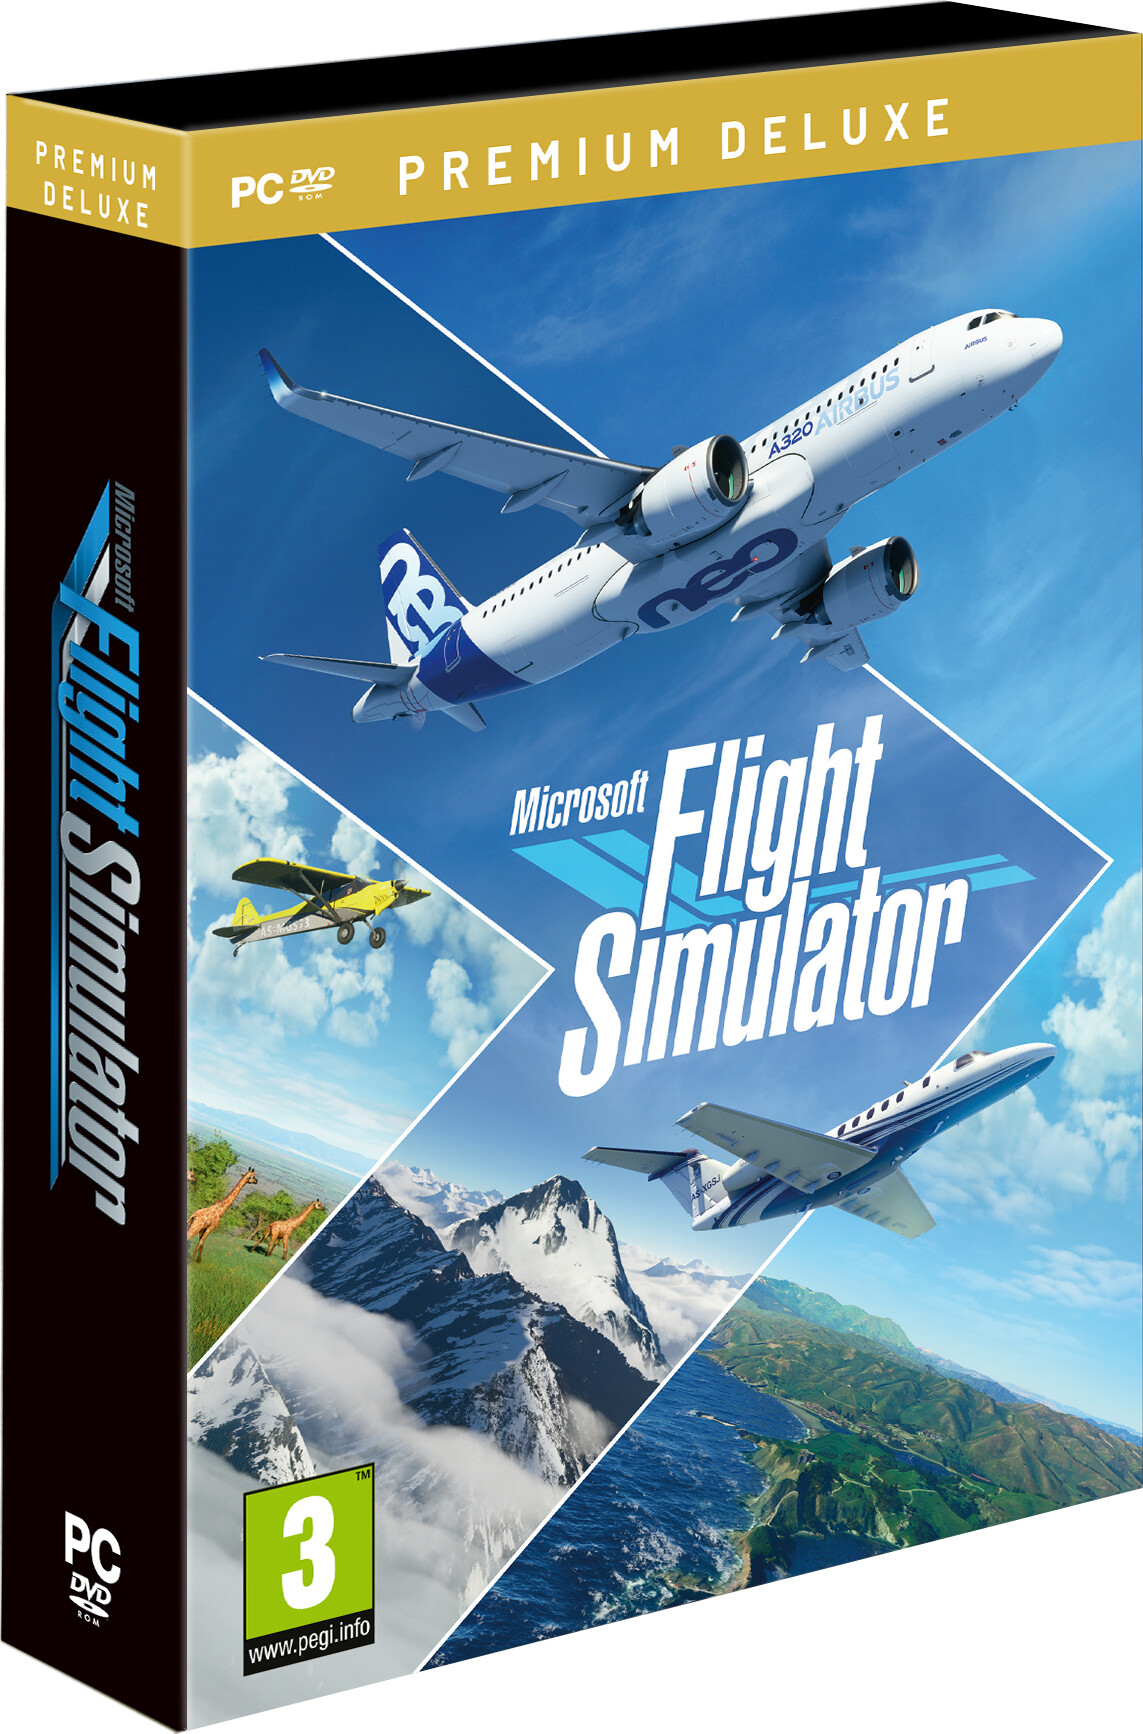 Microsoft Flight Simulator 2020 - Premium Deluxe Edition - PC